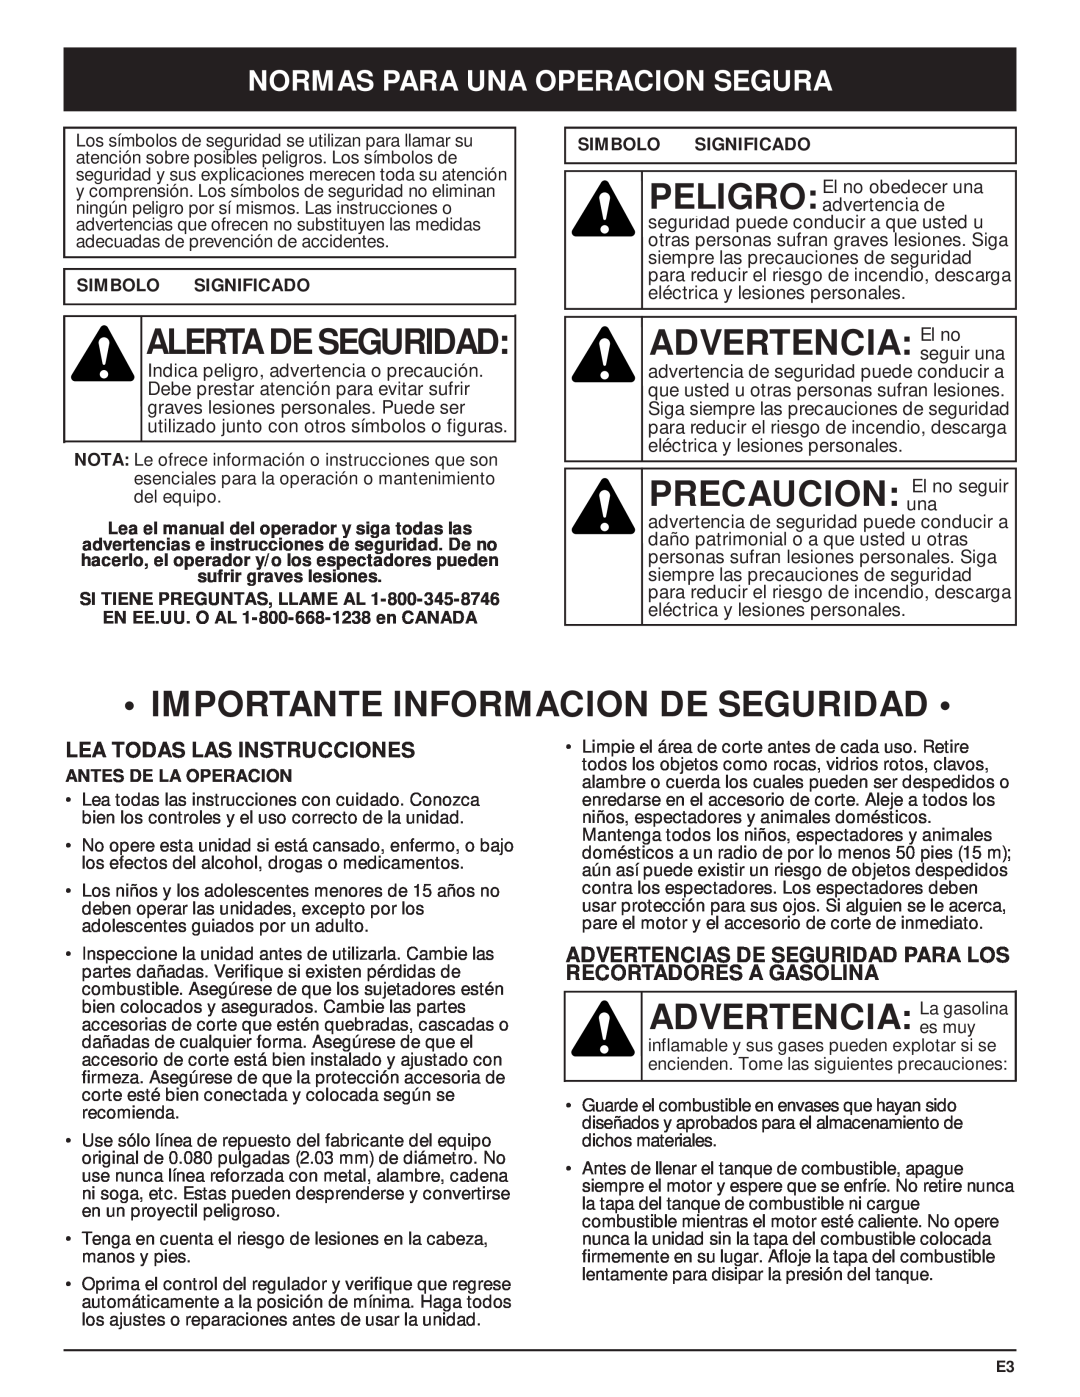 McCulloch MT705 manual Importante Informacion De Seguridad, ADVERTENCIA Laes muygasolina, Normas Para Una Operacion Segura 